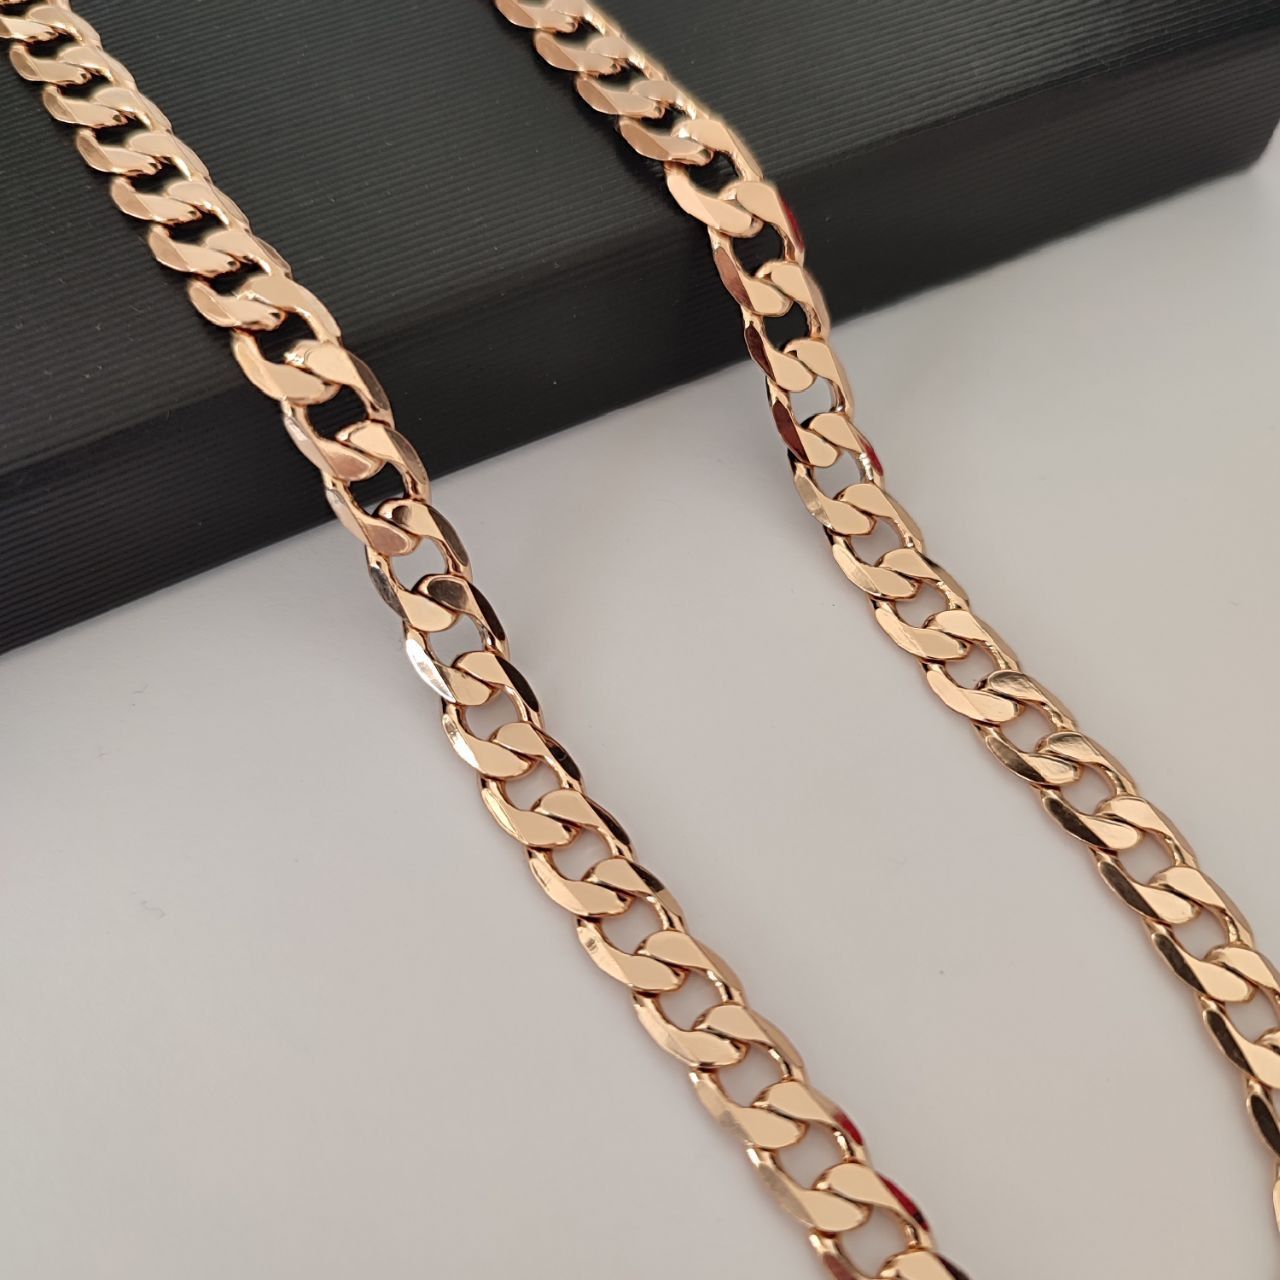 Złoty łańcuszek gruby stali chirurgicznej 60cm 7mm damski męski GRATIS